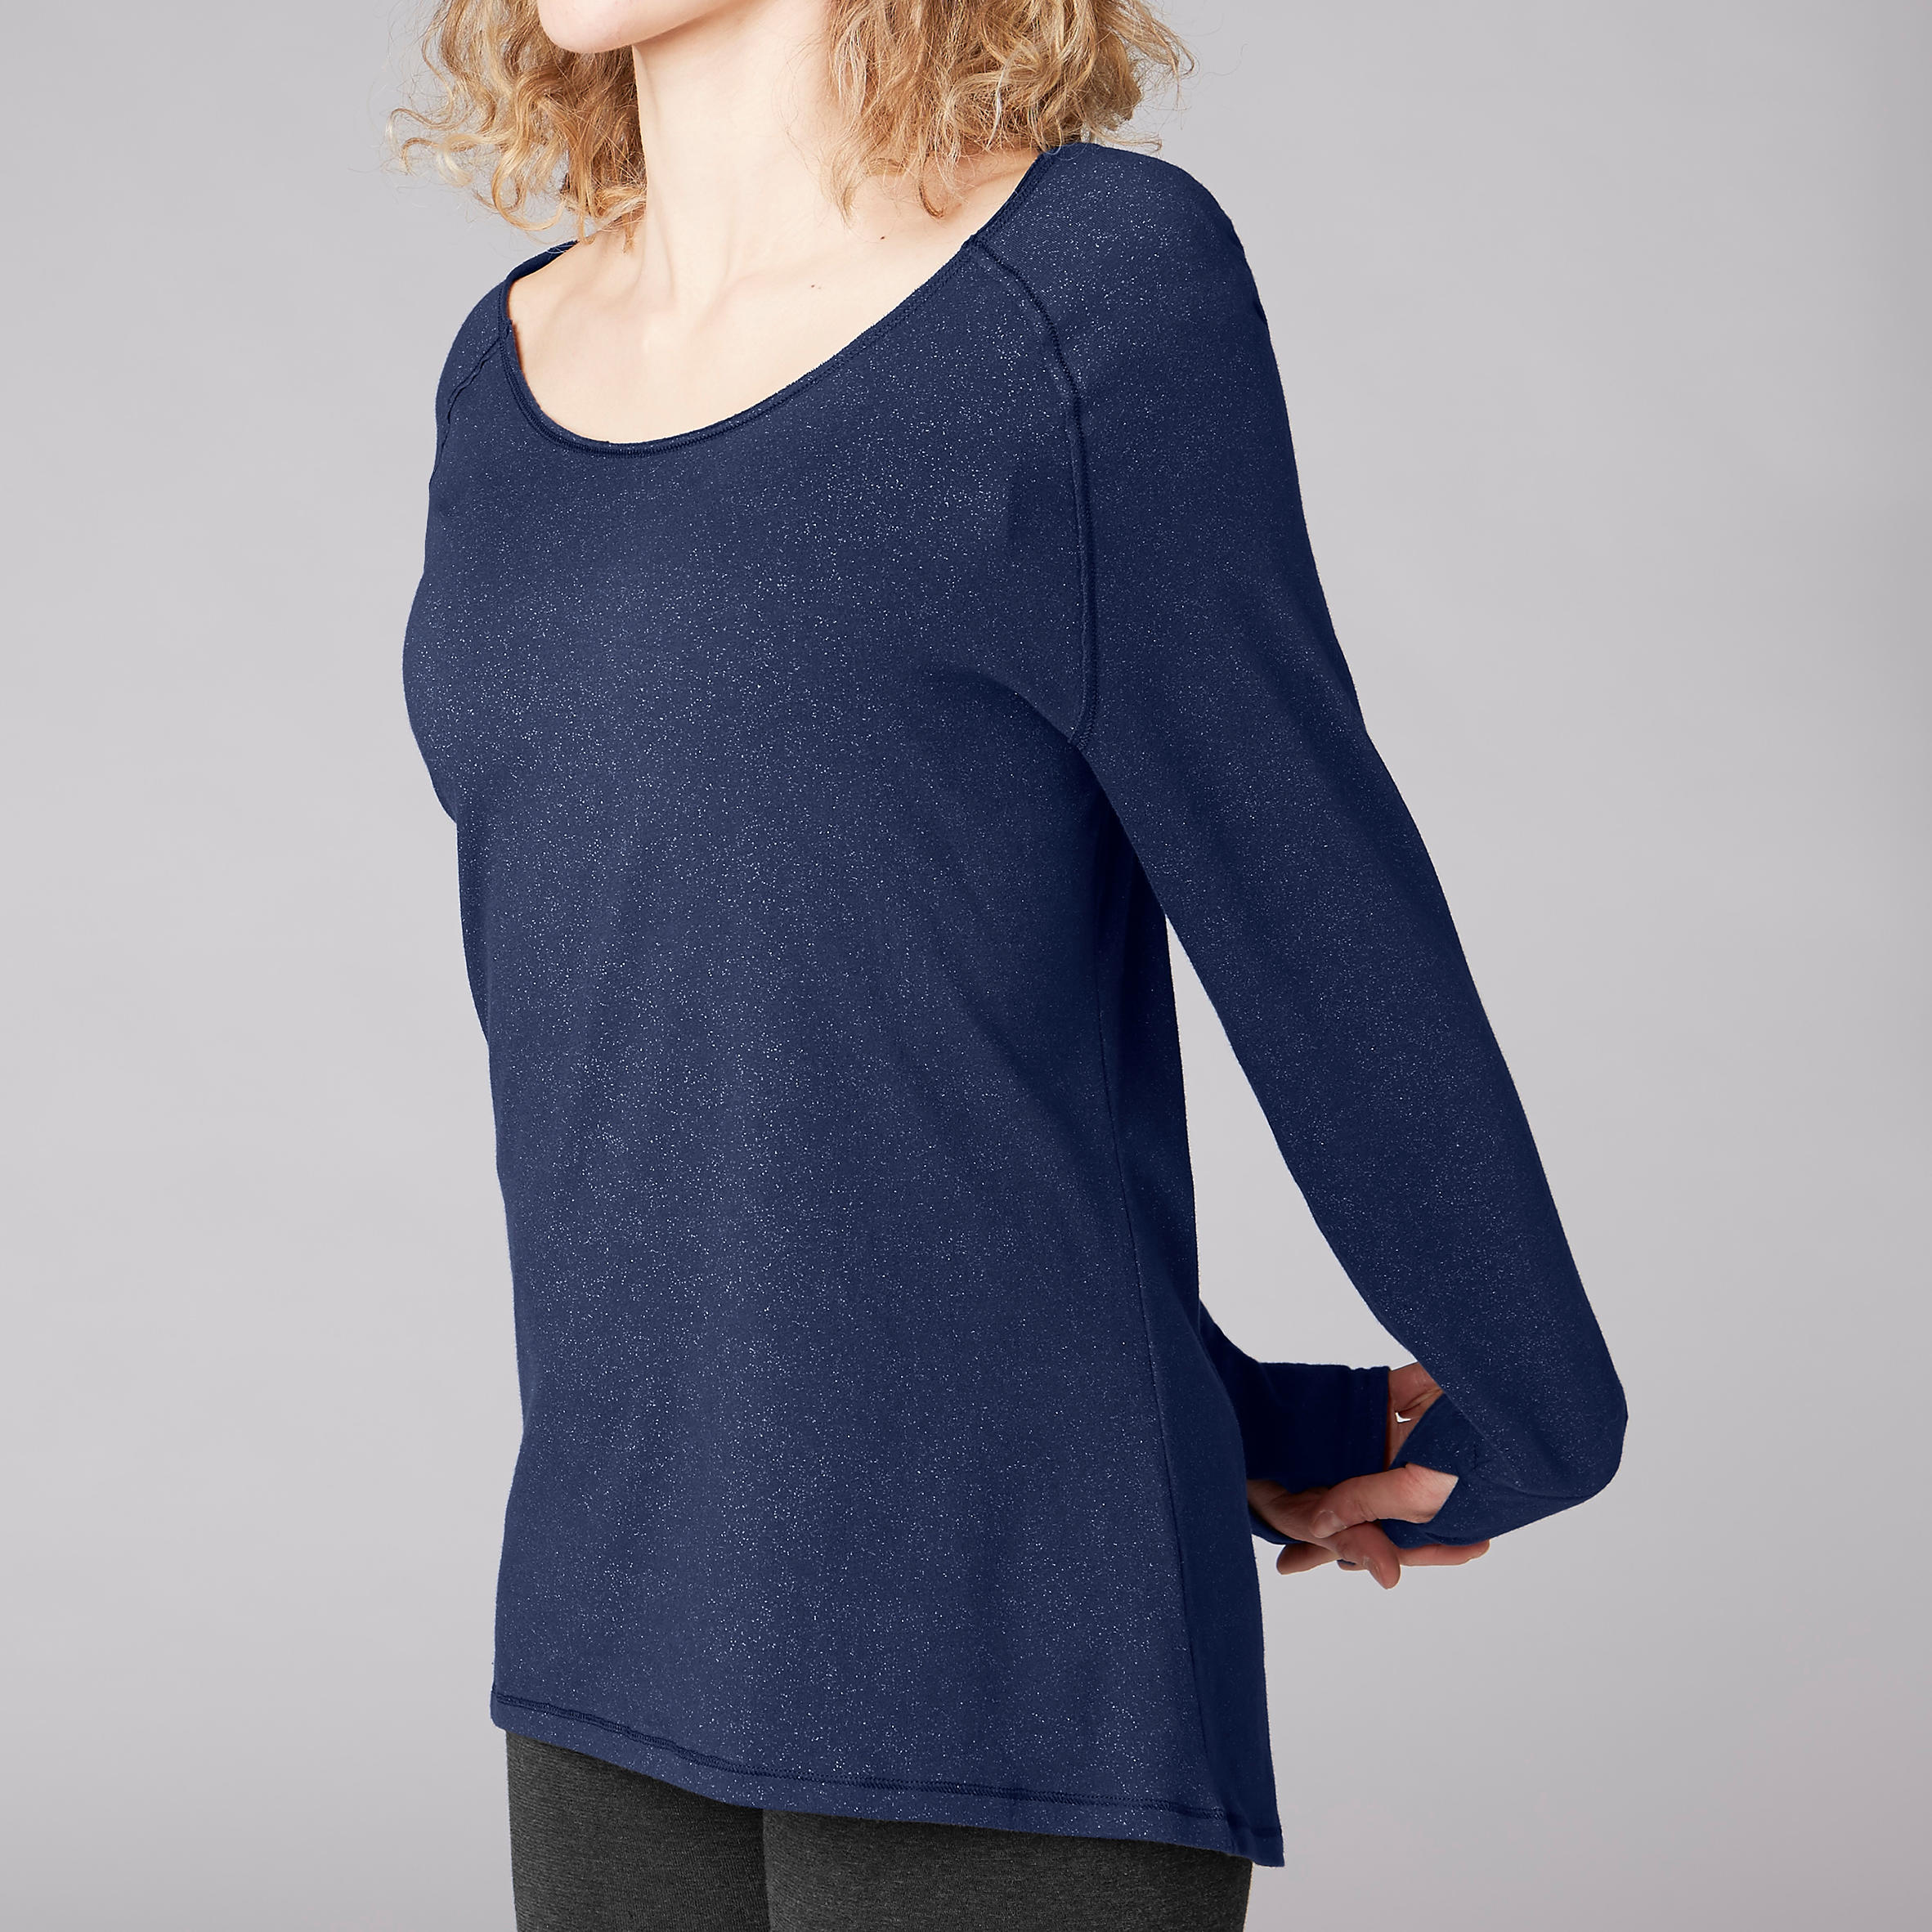 Organic Cotton Long-Sleeved Yoga T-Shirt - Navy 5/8